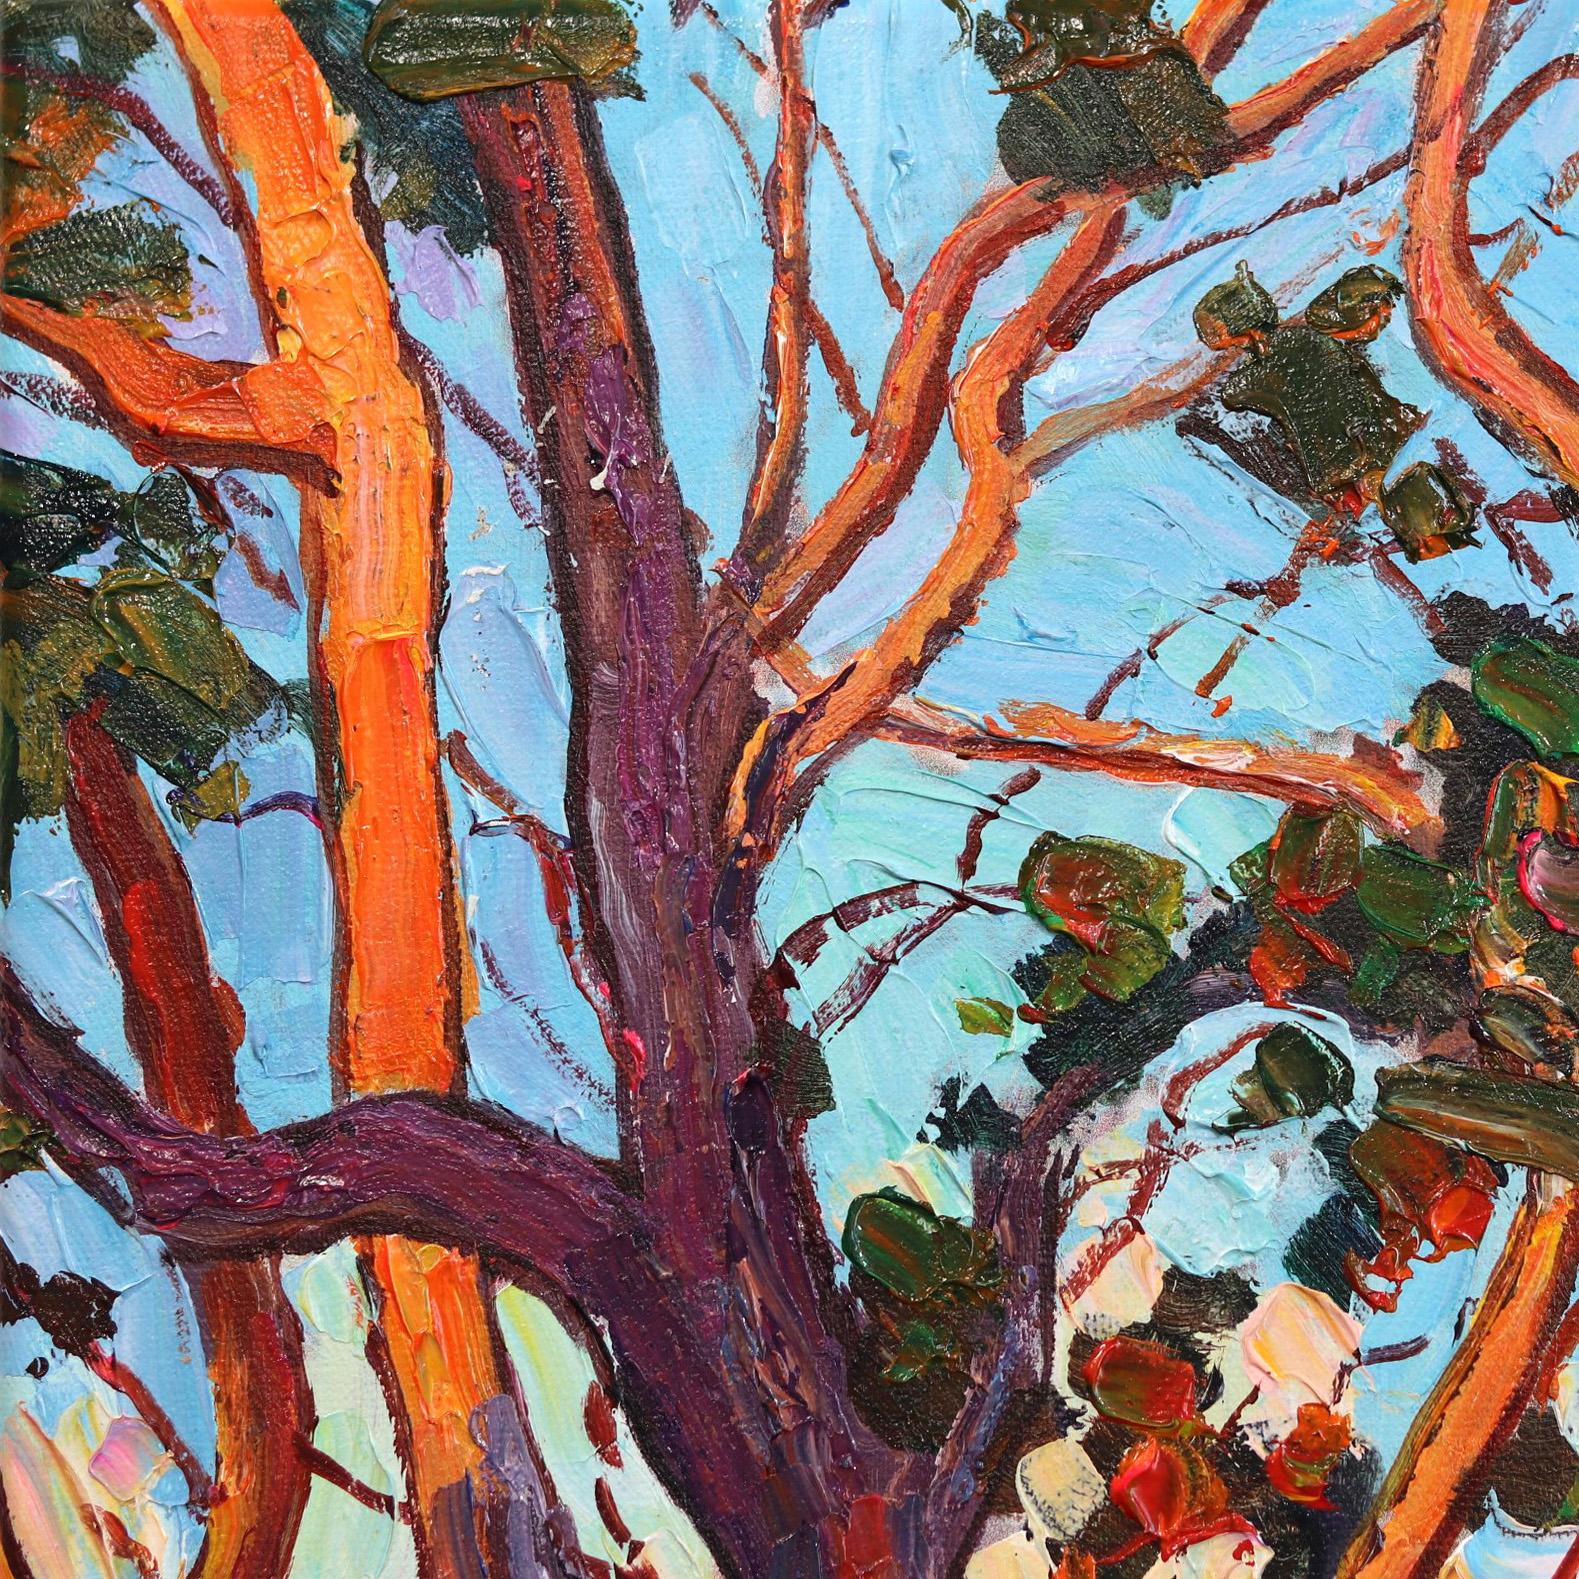 Inspirée par les peintures des maîtres anciens et par la nature immersive de la Forêt Noire, l'artiste allemande Katharina Husslein peint de manière représentative et hyperréaliste pour capturer des bouquets vivants et des paysages saturés. Les